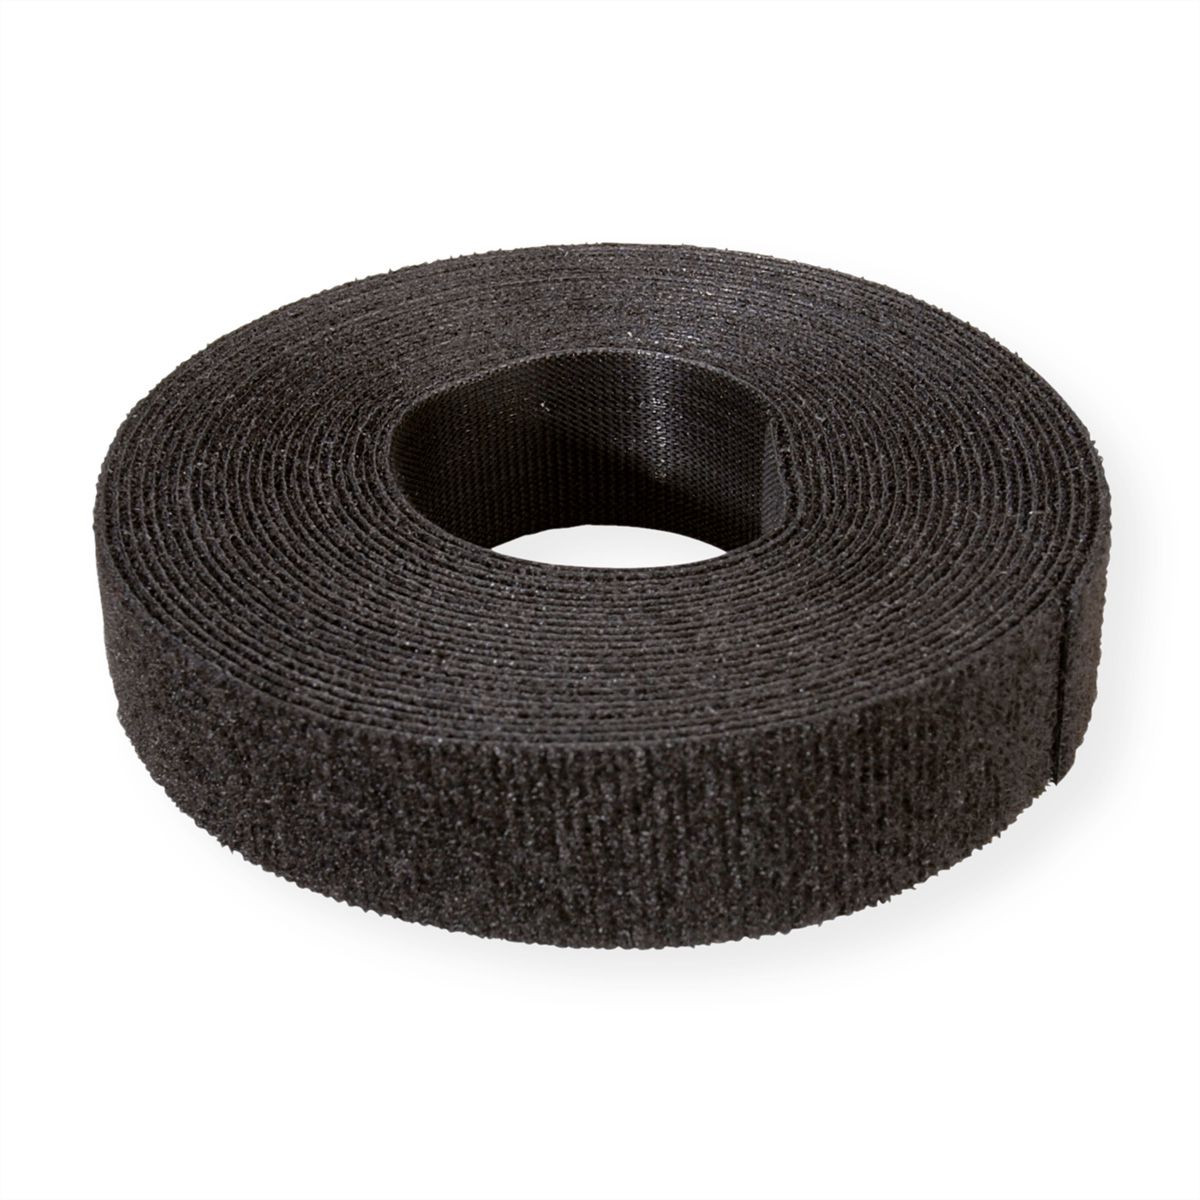 Le Rouleau de ruban Velcro Fixation Adhésive Noir